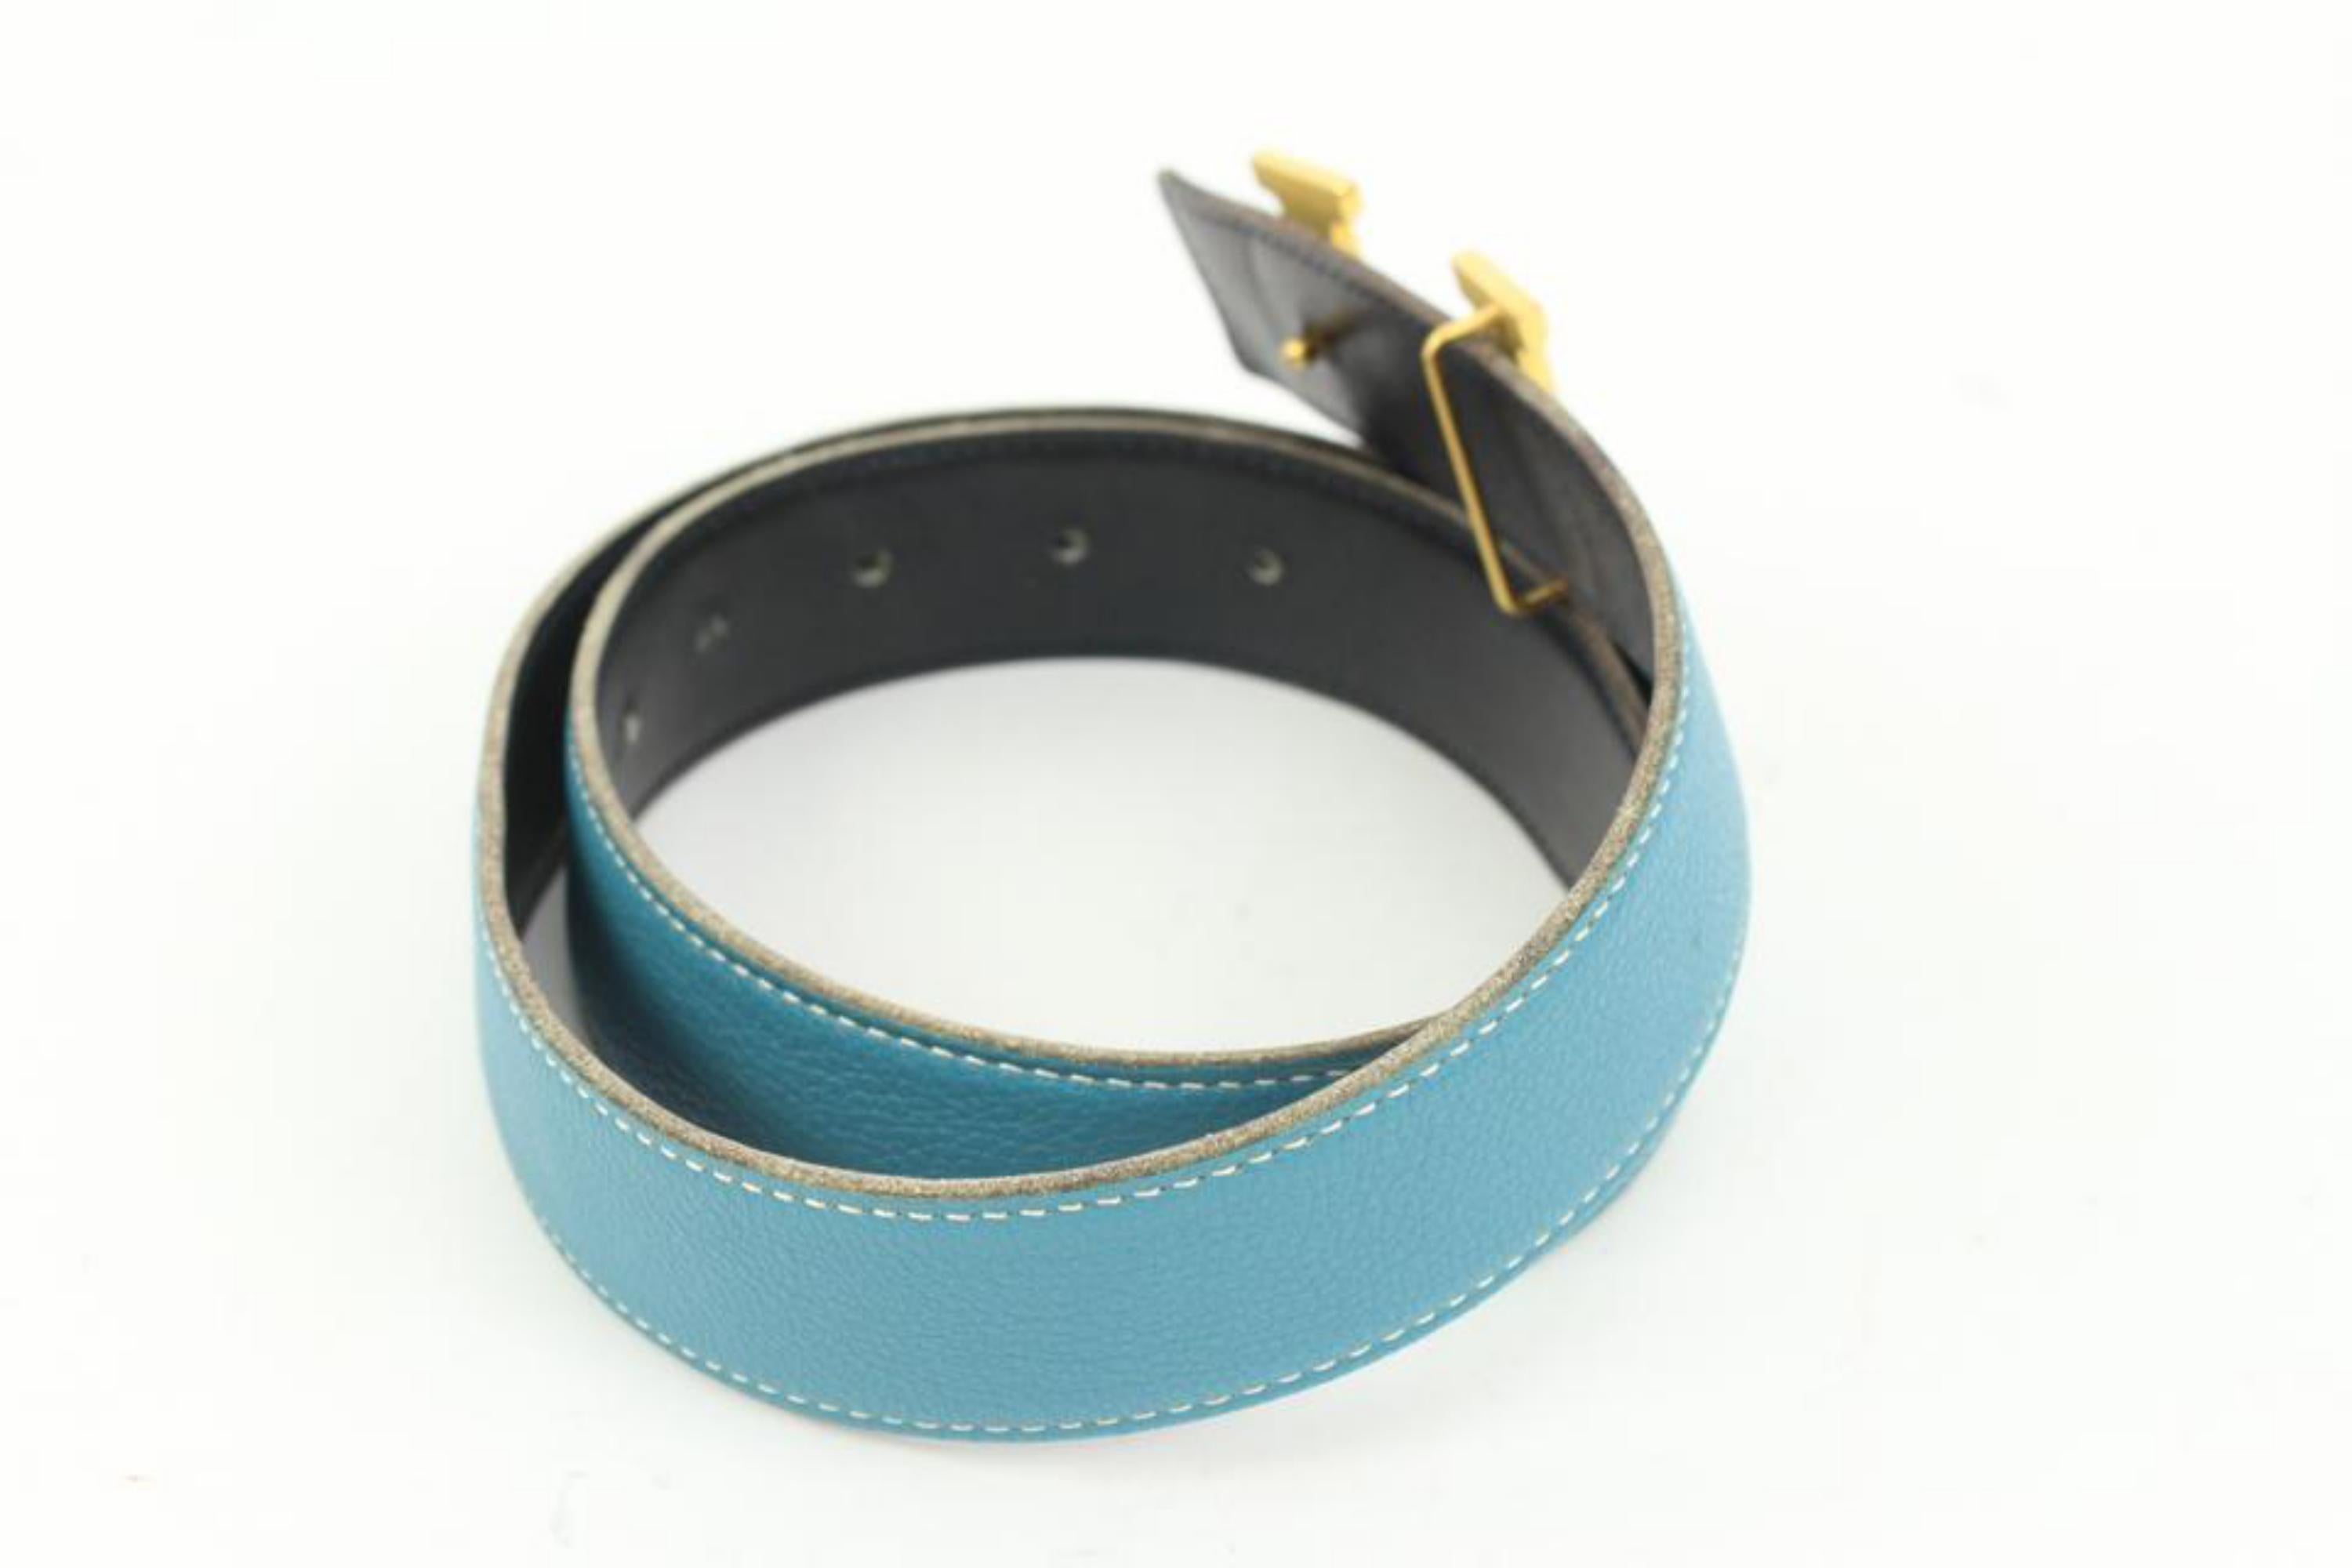 Kit ceinture logo H réversible 32 mm noir x bleu Jean x or 41h55 Pour femmes en vente